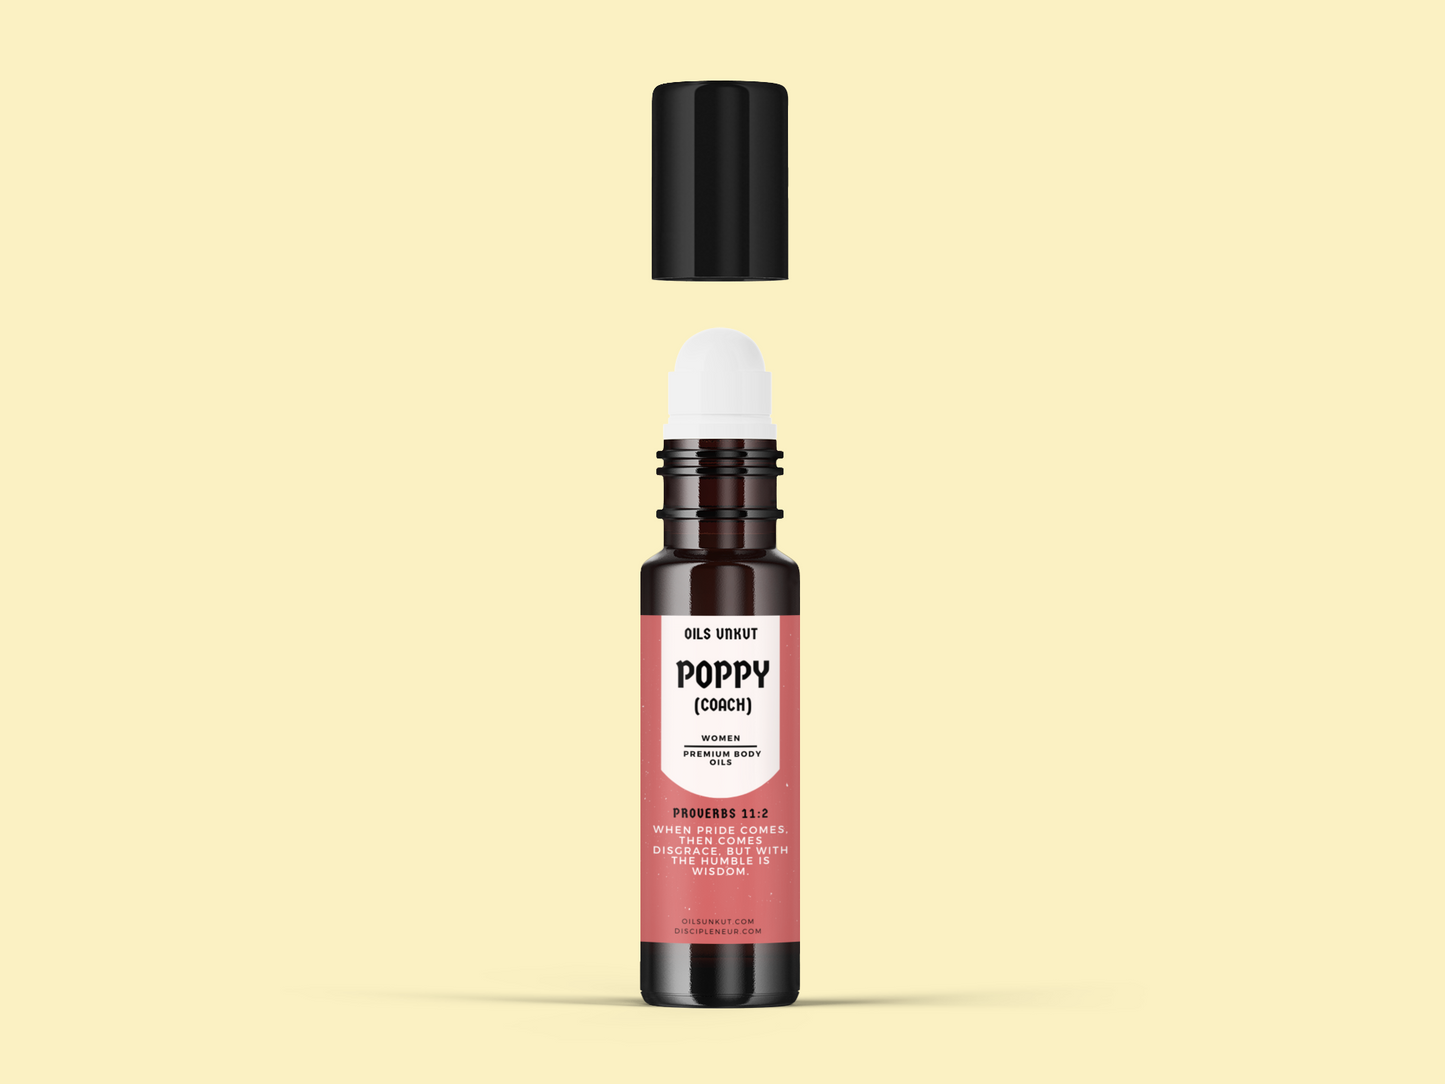 Poppy Body Oil For Women (Coach)